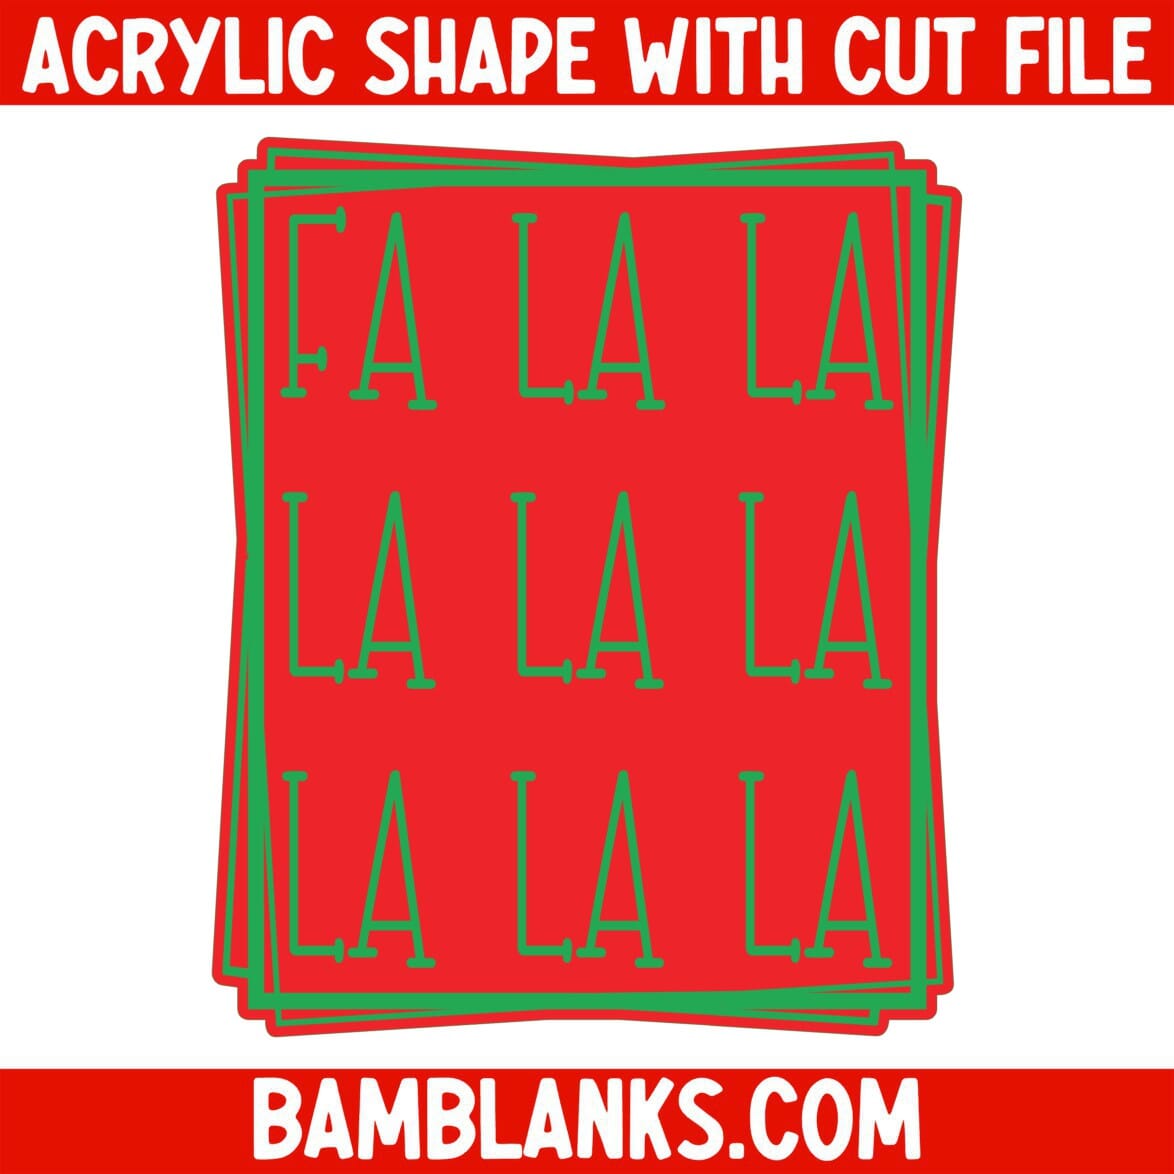 FaLaLa - Acrylic Shape #875